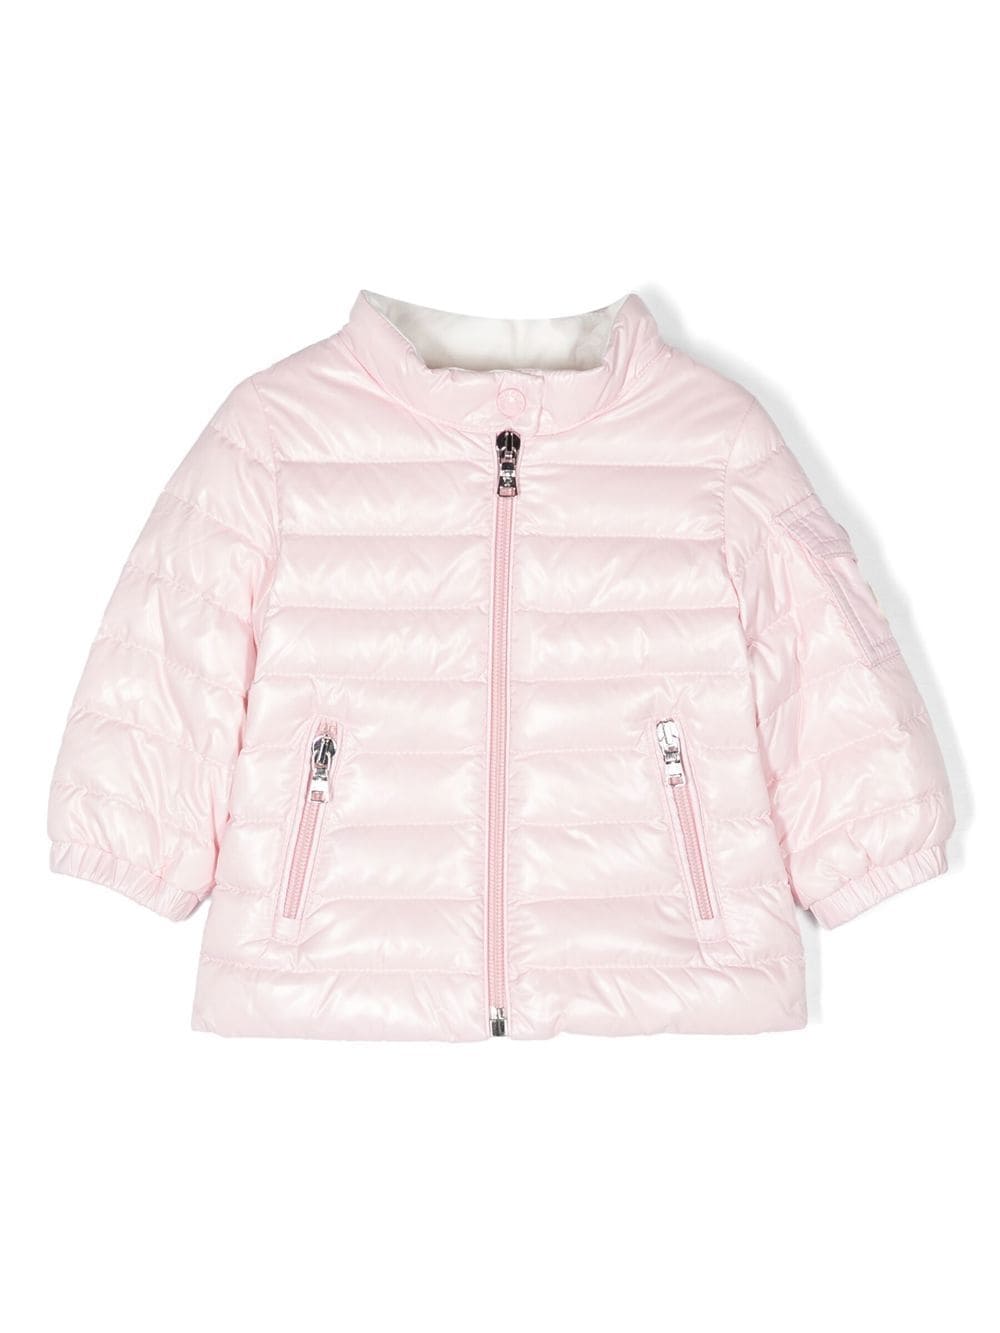 Moncler Enfant logo-patch sleeve jacket - Pink von Moncler Enfant